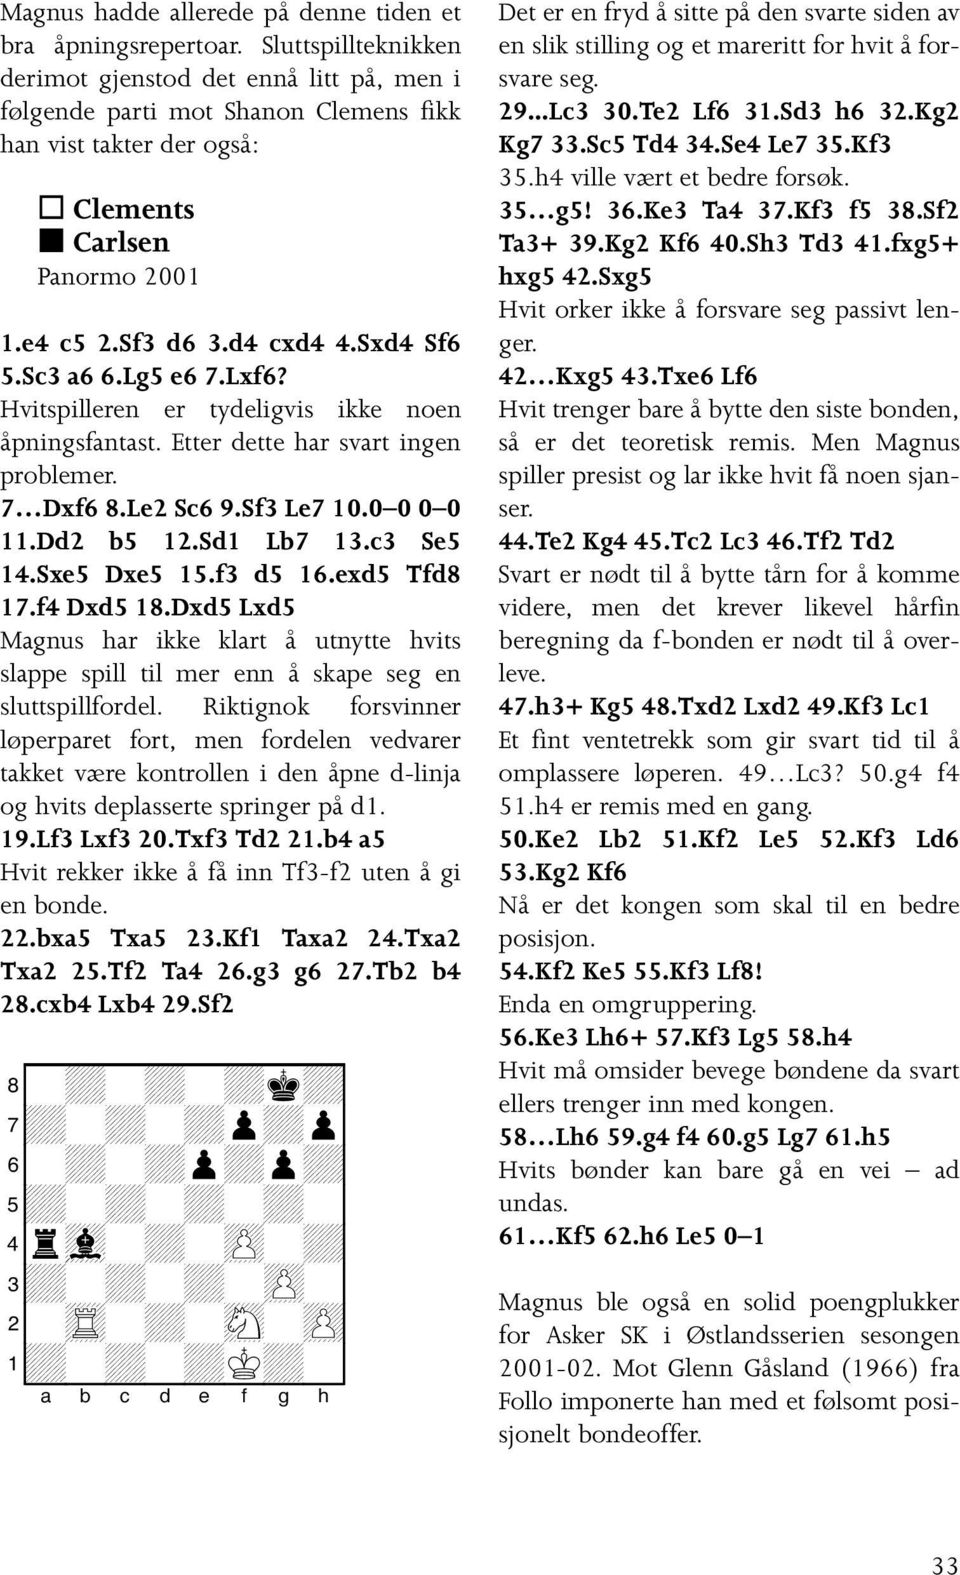 Sc3 a6 6.Lg5 e6 7.Lxf6? Hvitspilleren er tydeligvis ikke noen åpningsfantast. Etter dette har svart ingen problemer. 7 Dxf6 8.Le2 Sc6 9.Sf3 Le7 10.0 0 0 0 11.Dd2 b5 12.Sd1 Lb7 13.c3 Se5 14.